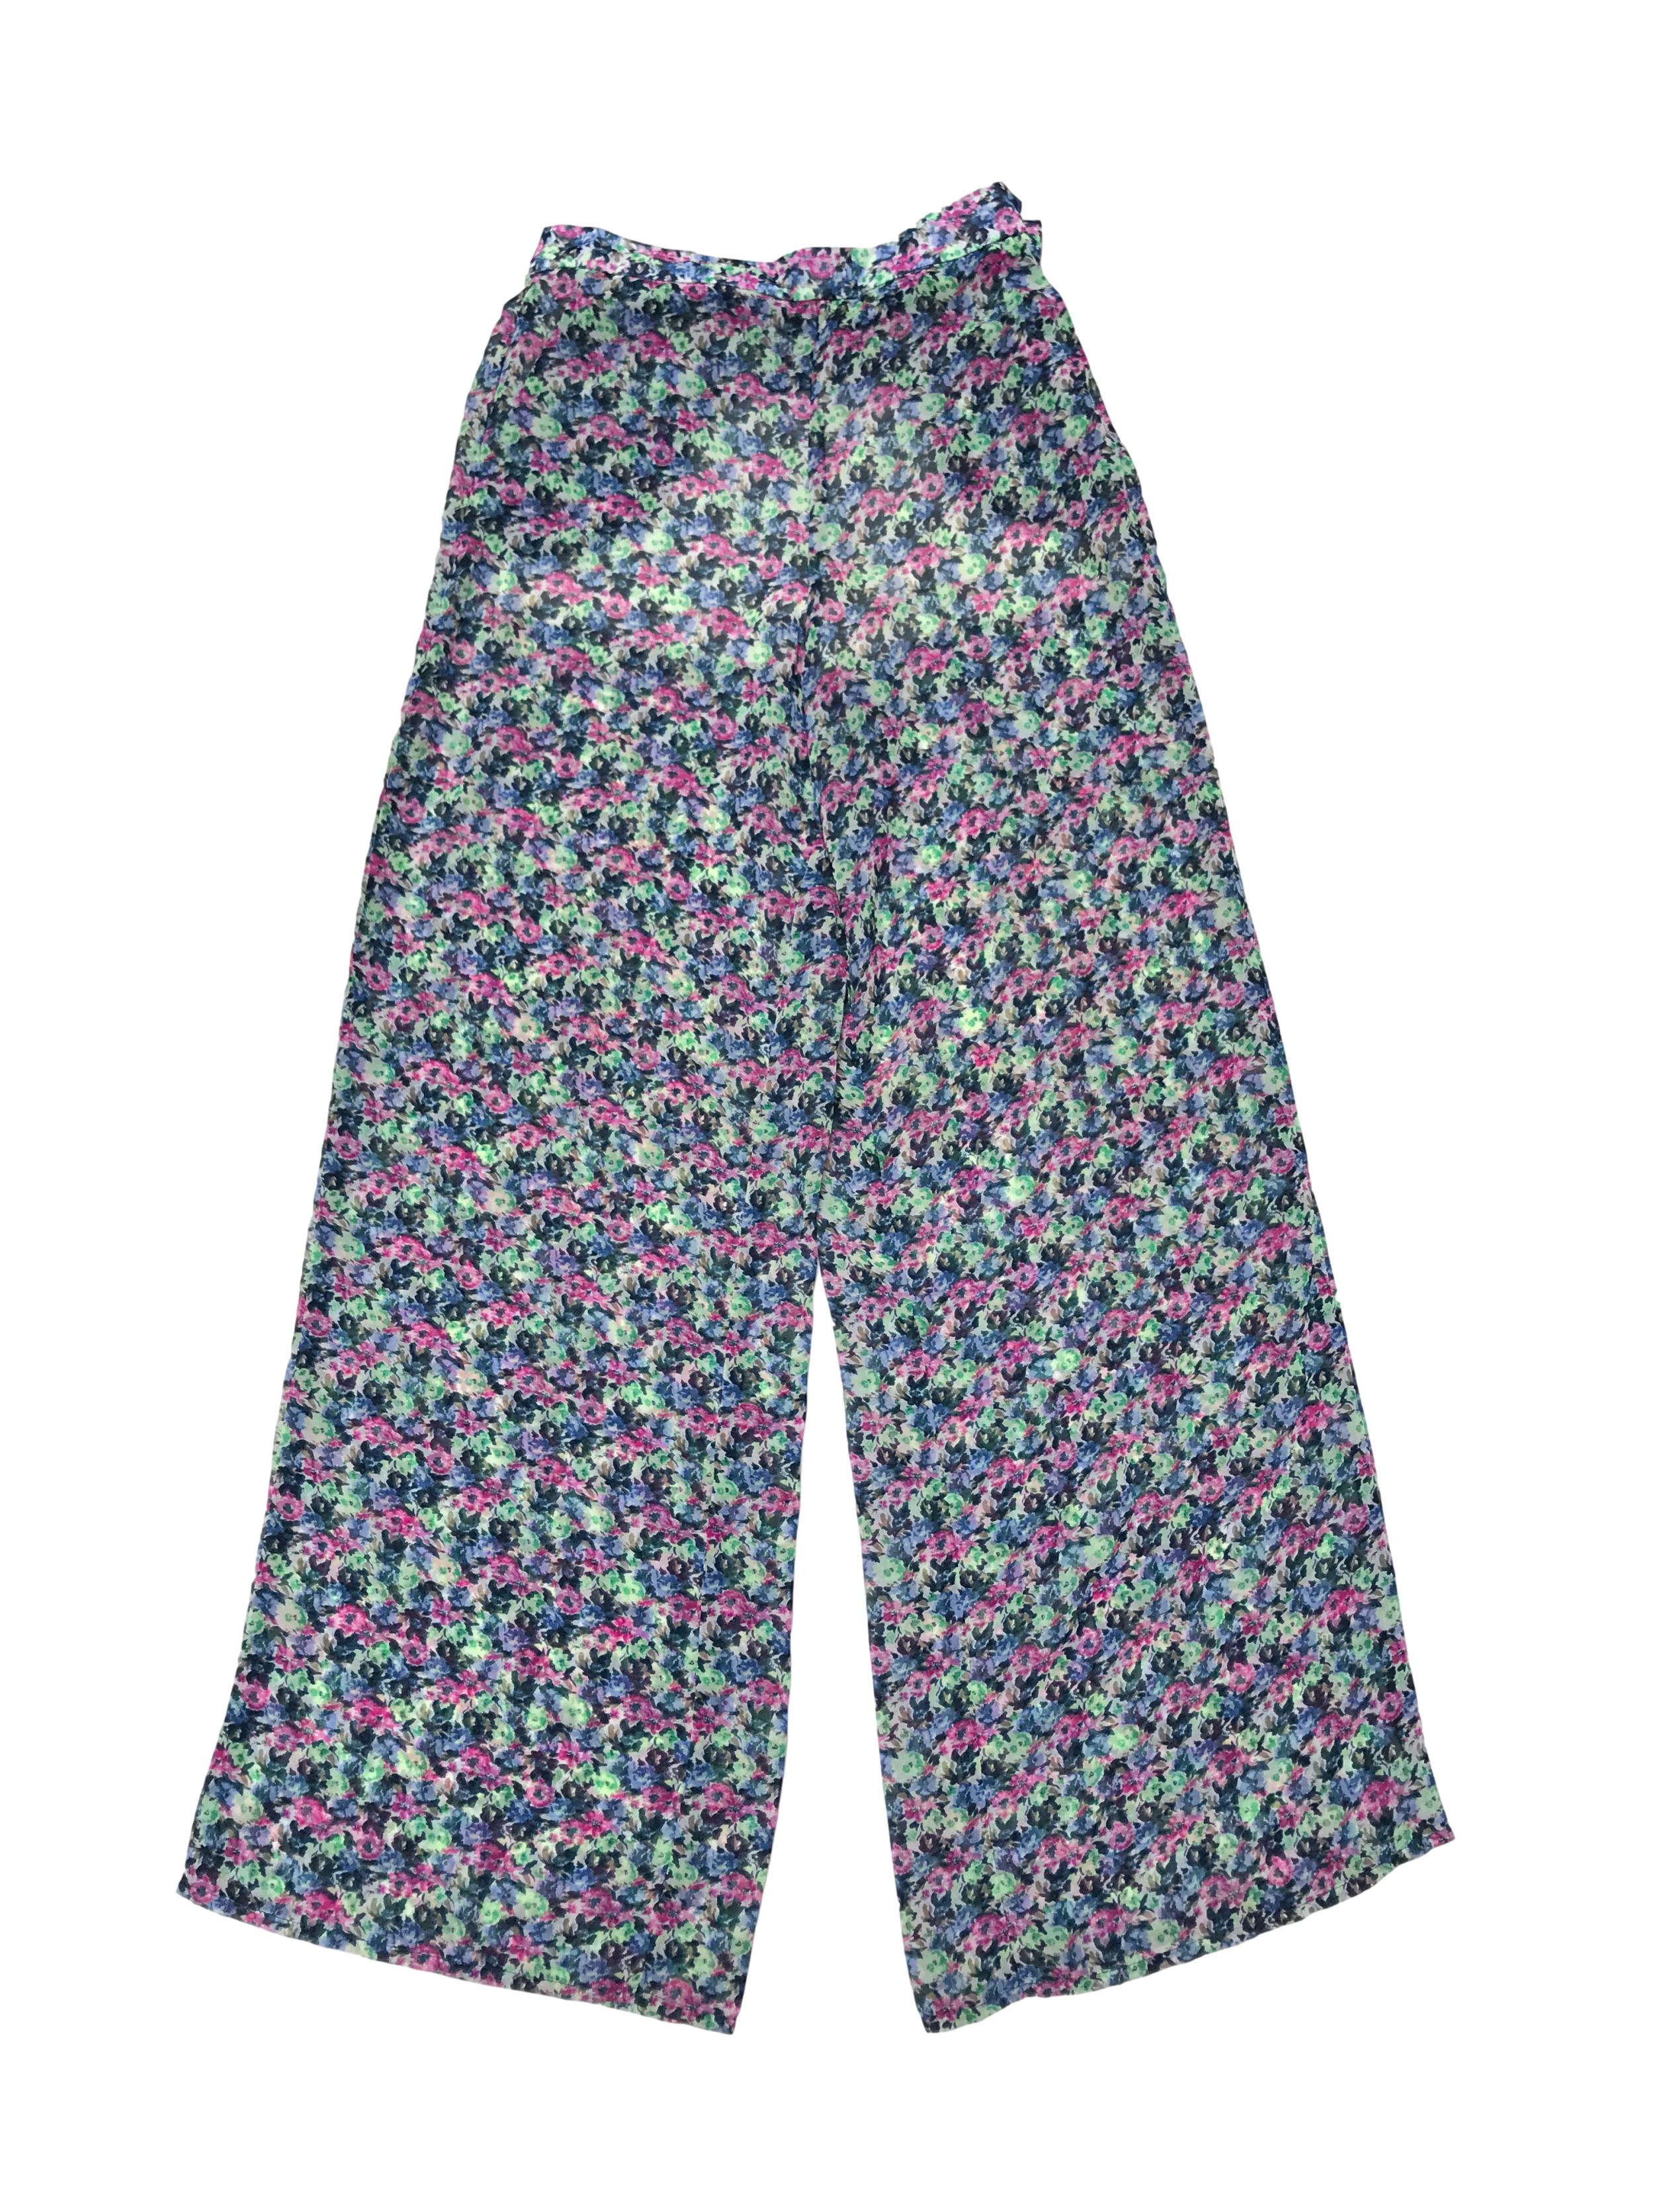 Pantalón de gasa floreada y forro short de mesh, pierna ancha estilo palazzo, con bolsillos, cierre y botón laterales. Cintura 72cm